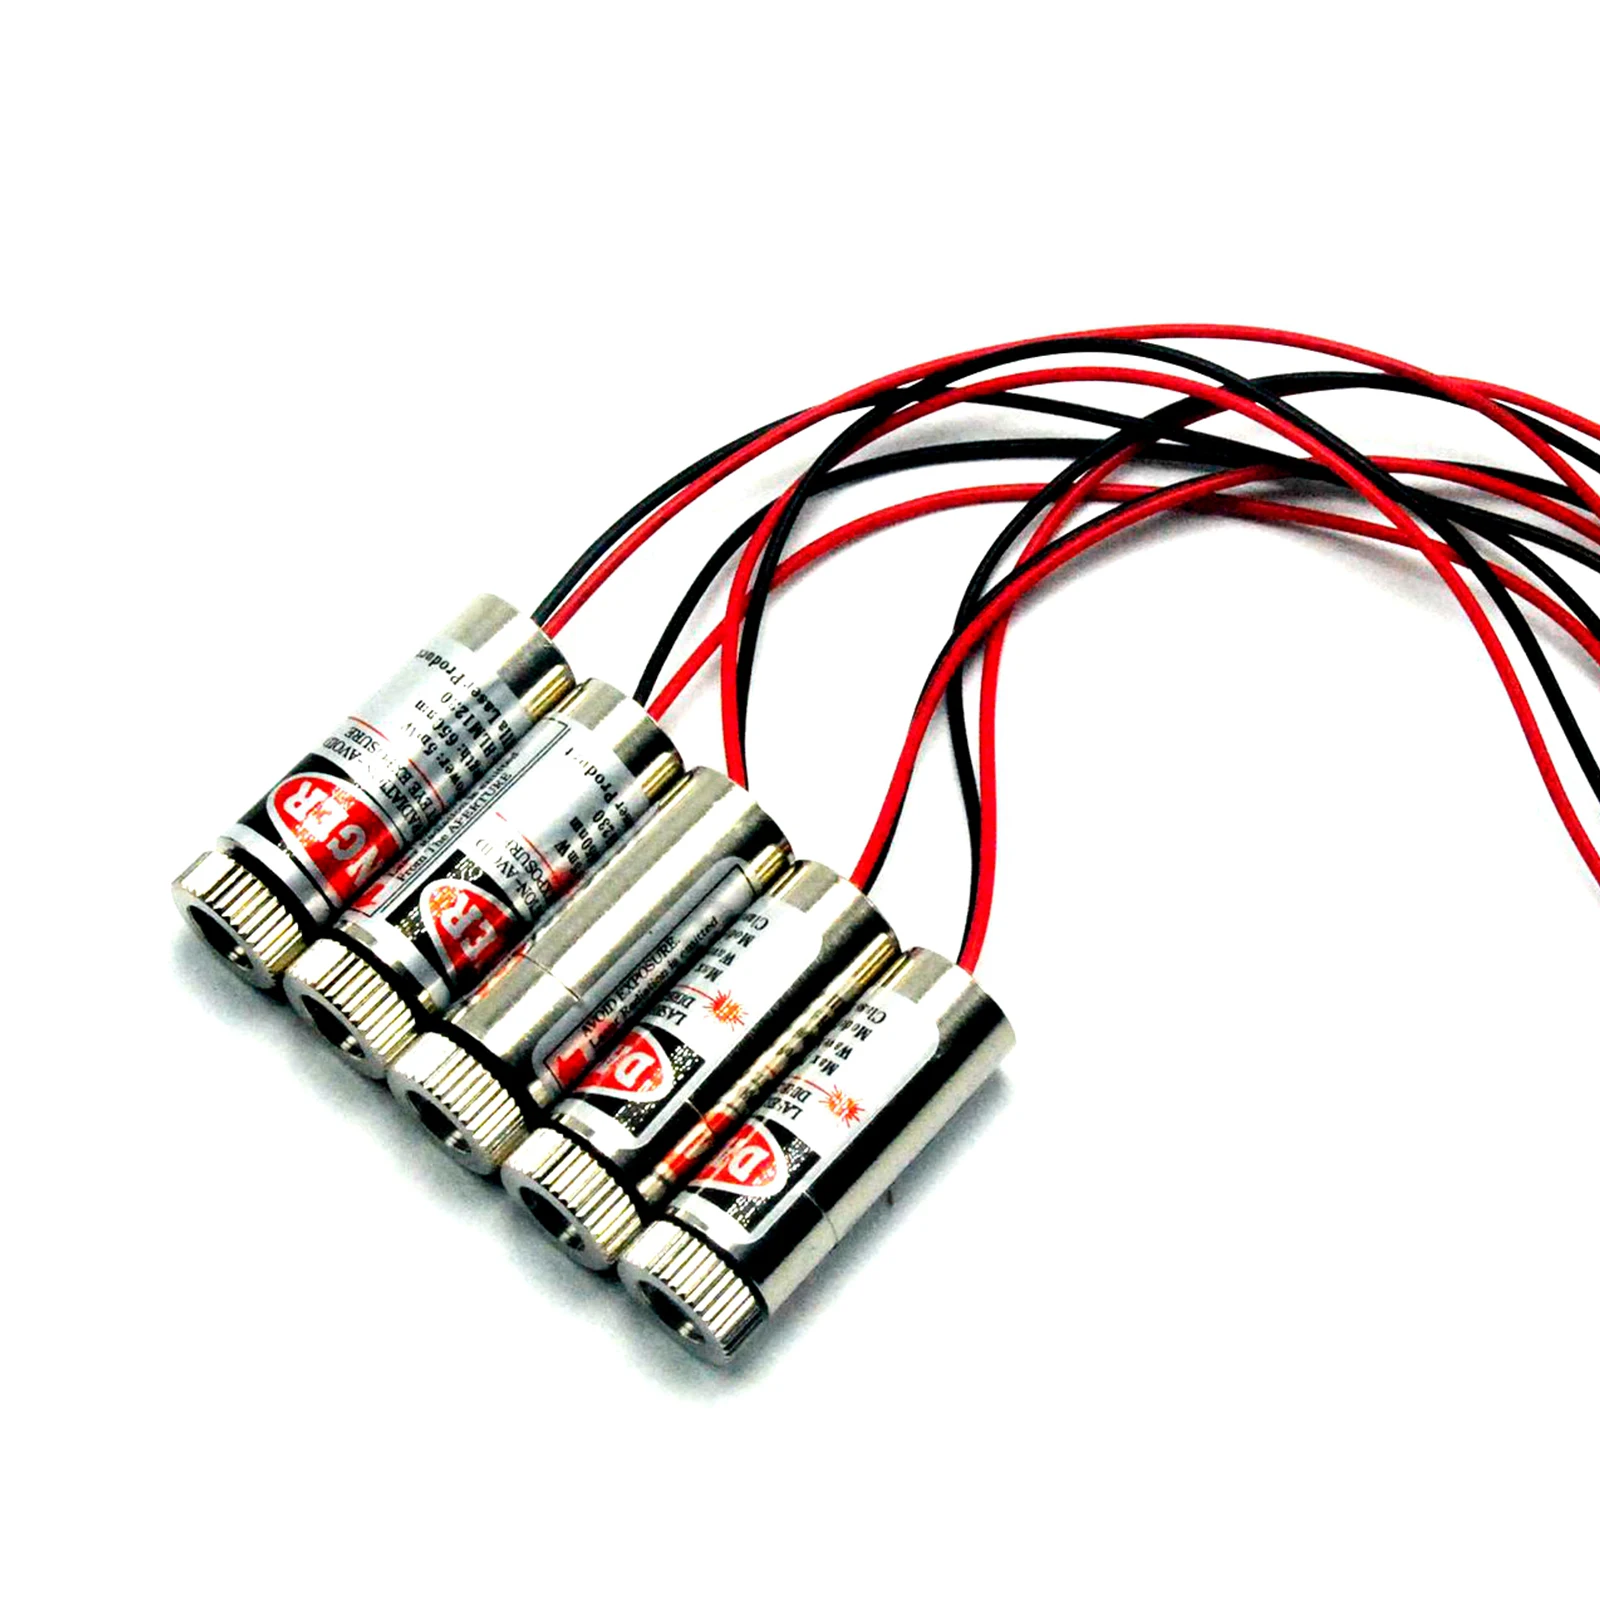 Фокусируемый красный лазерный диодный модуль 650 нм 5 мВт 3-5 в красная лазерная Форма креста с драйвером (5 шт.) от AliExpress WW